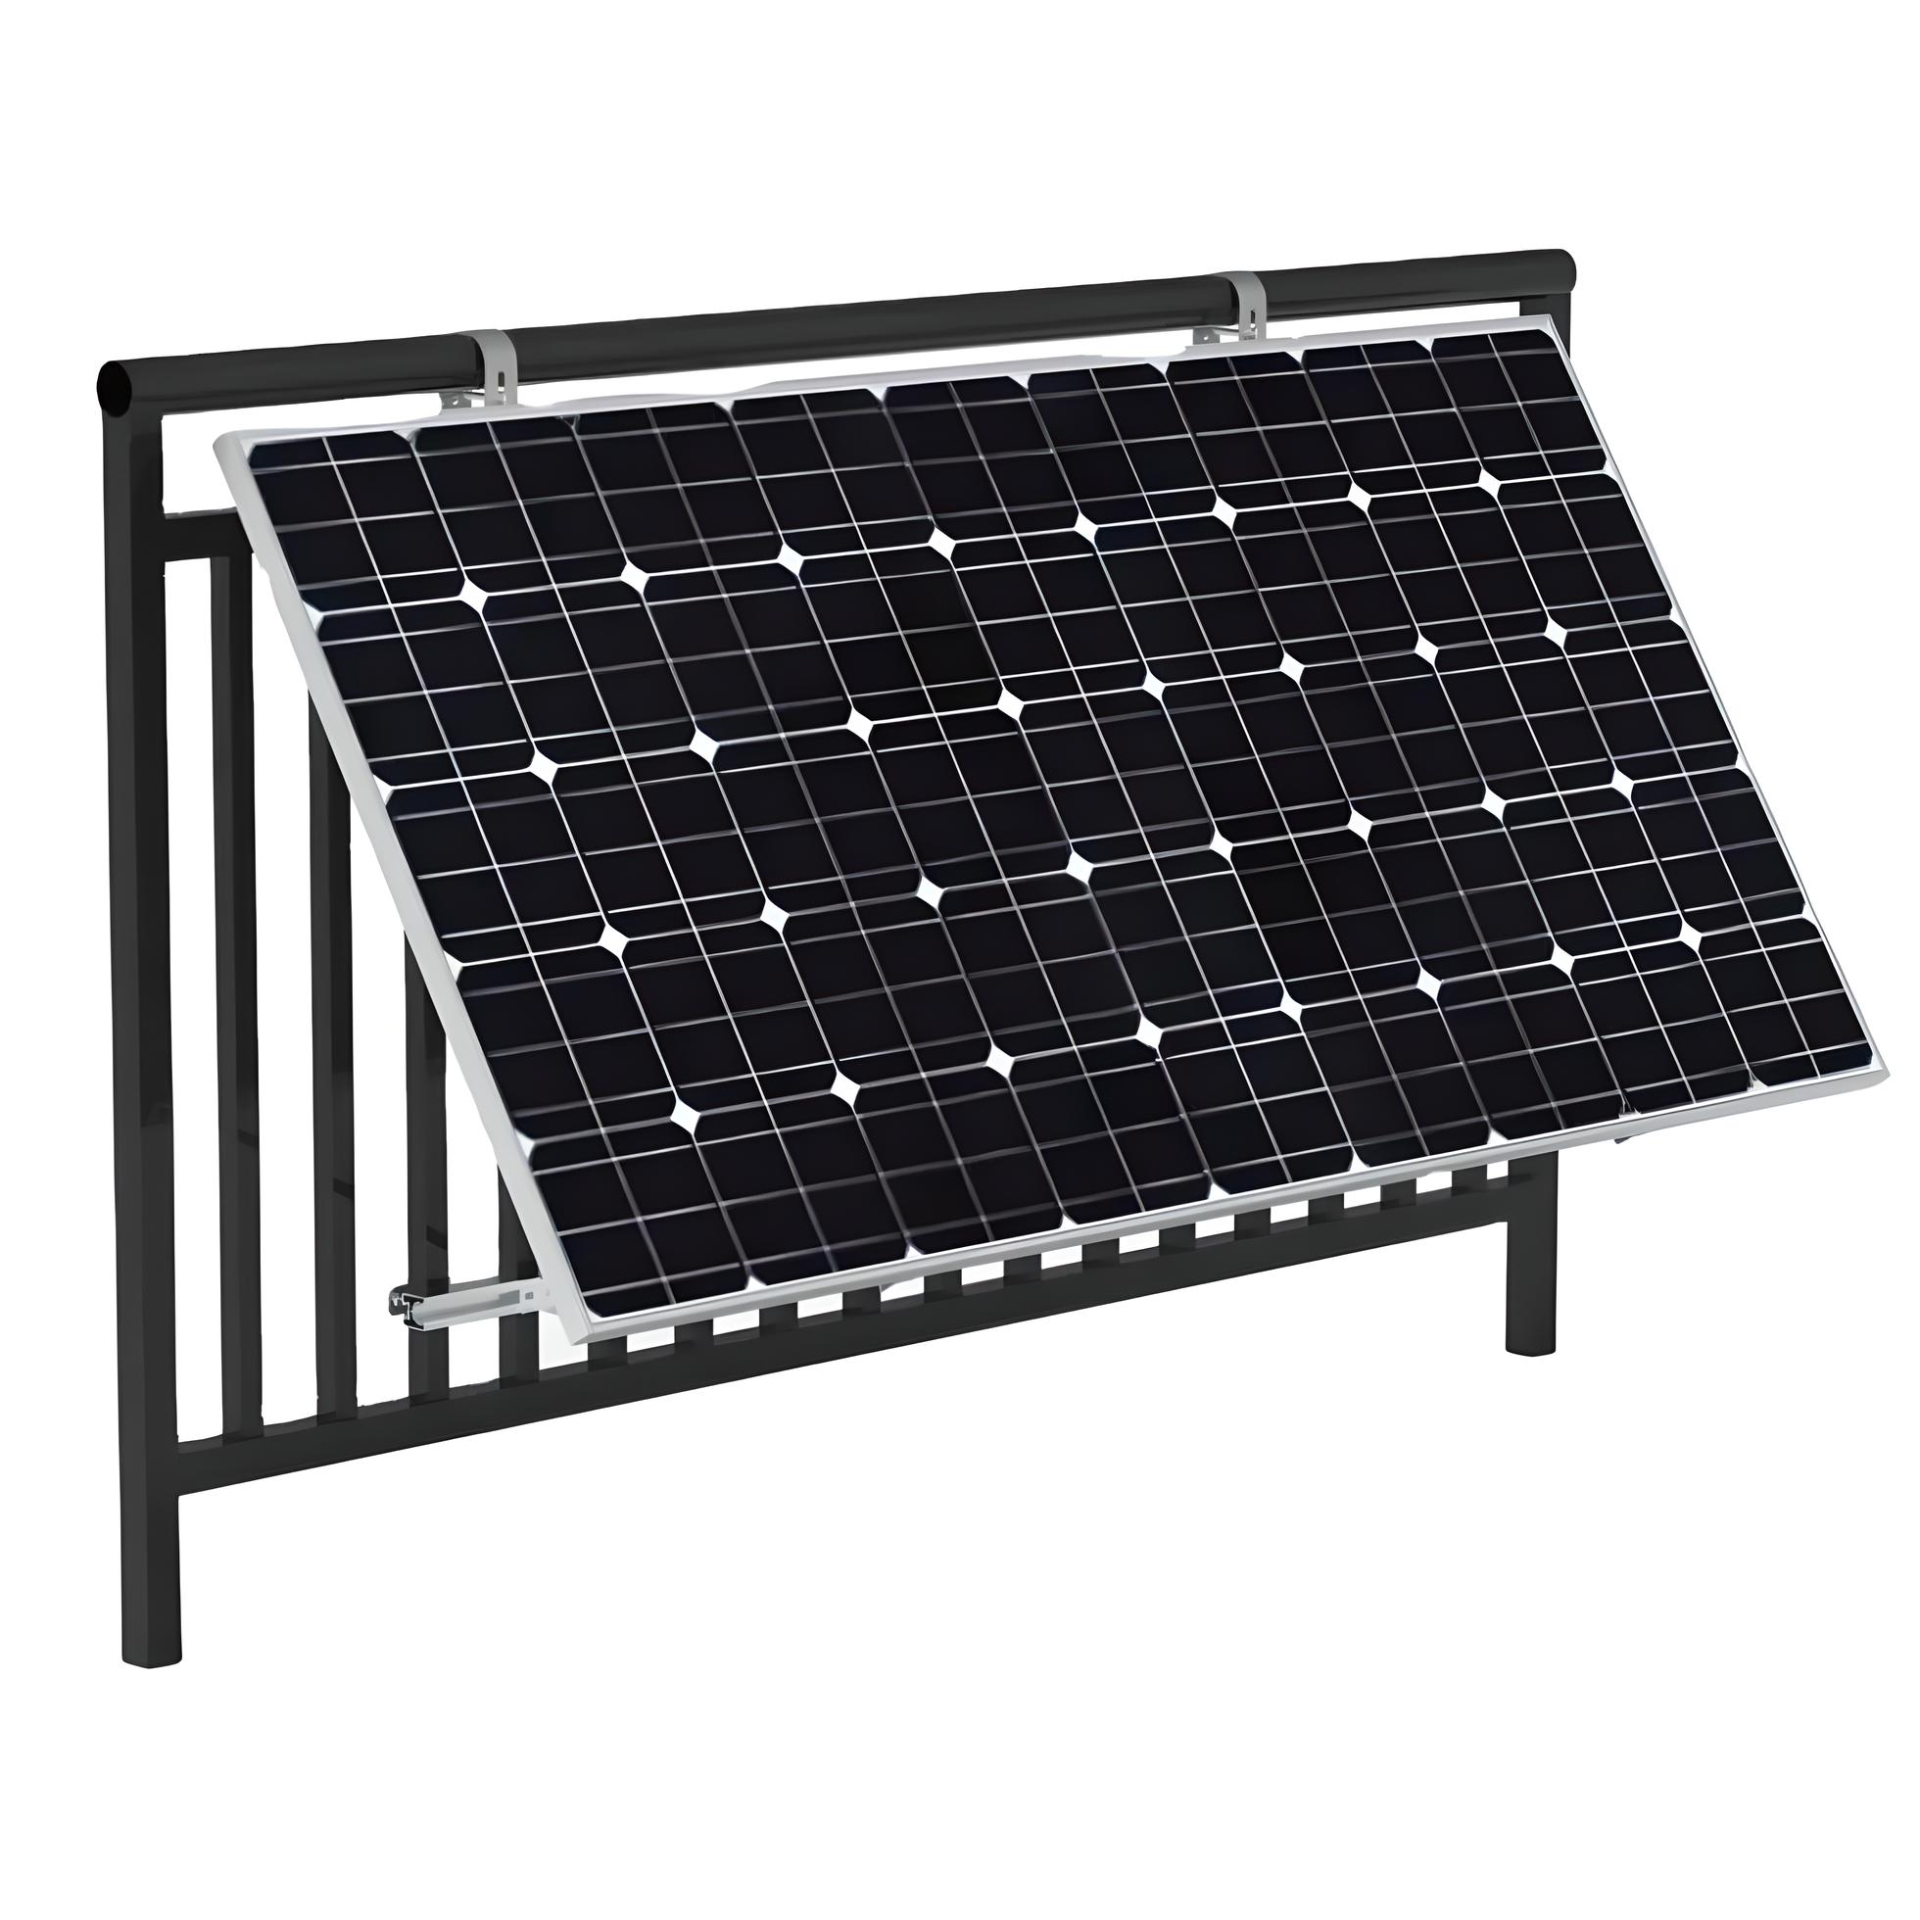 TZIPower Balkon Solar Rundhaken Befestigung Halterungs-Set Halterung Solarmodul mit